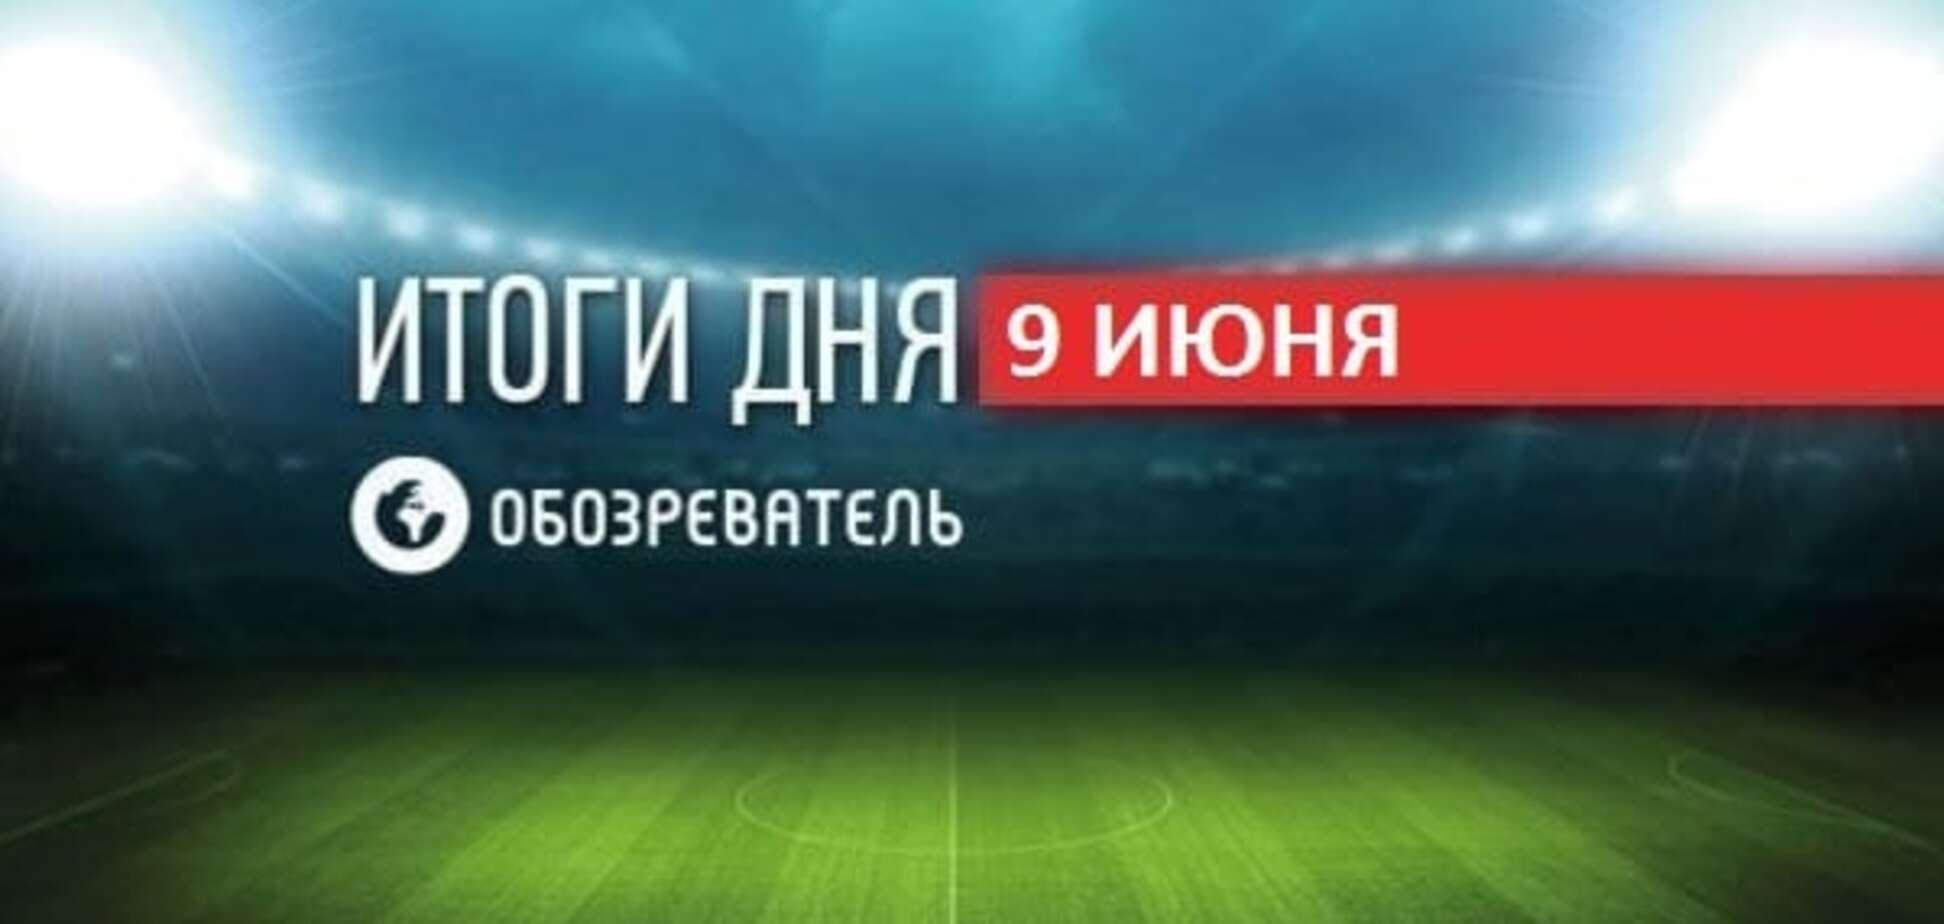 Гравець 'Шахтаря' побував біля 'Донбас Арени'. Спортивні підсумки за 9 червня